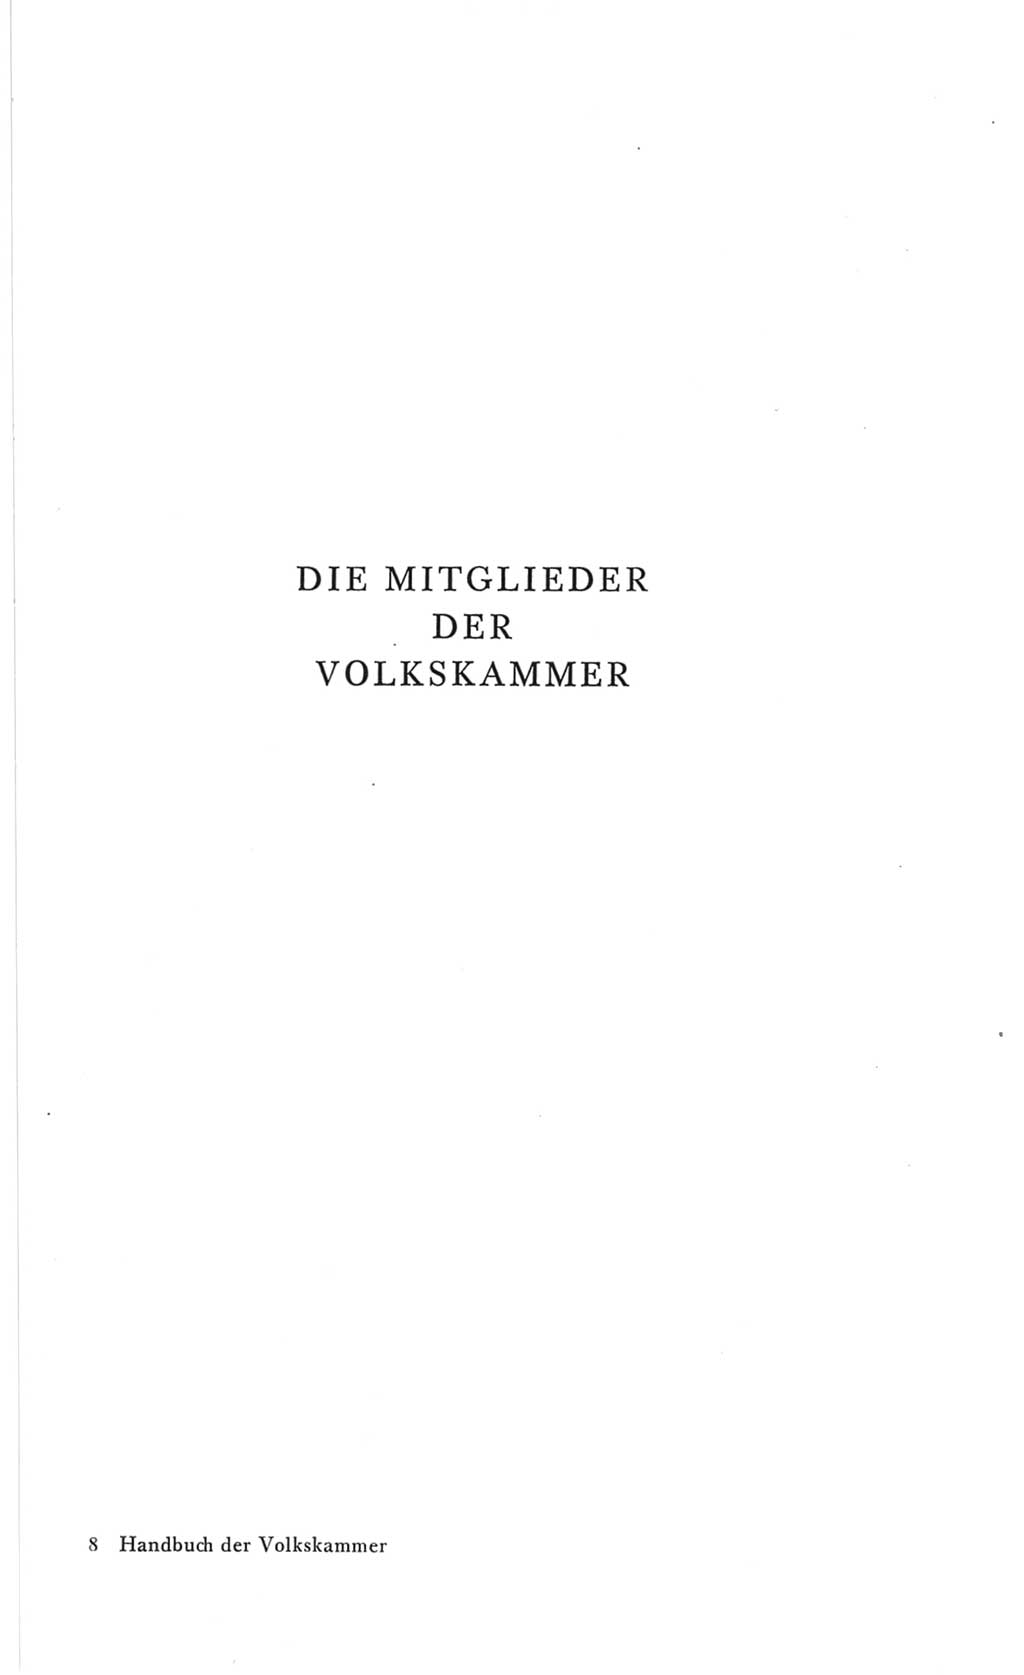 Handbuch der Volkskammer (VK) der Deutschen Demokratischen Republik (DDR), 3. Wahlperiode 1958-1963, Seite 117 (Hdb. VK. DDR 3. WP. 1958-1963, S. 117)